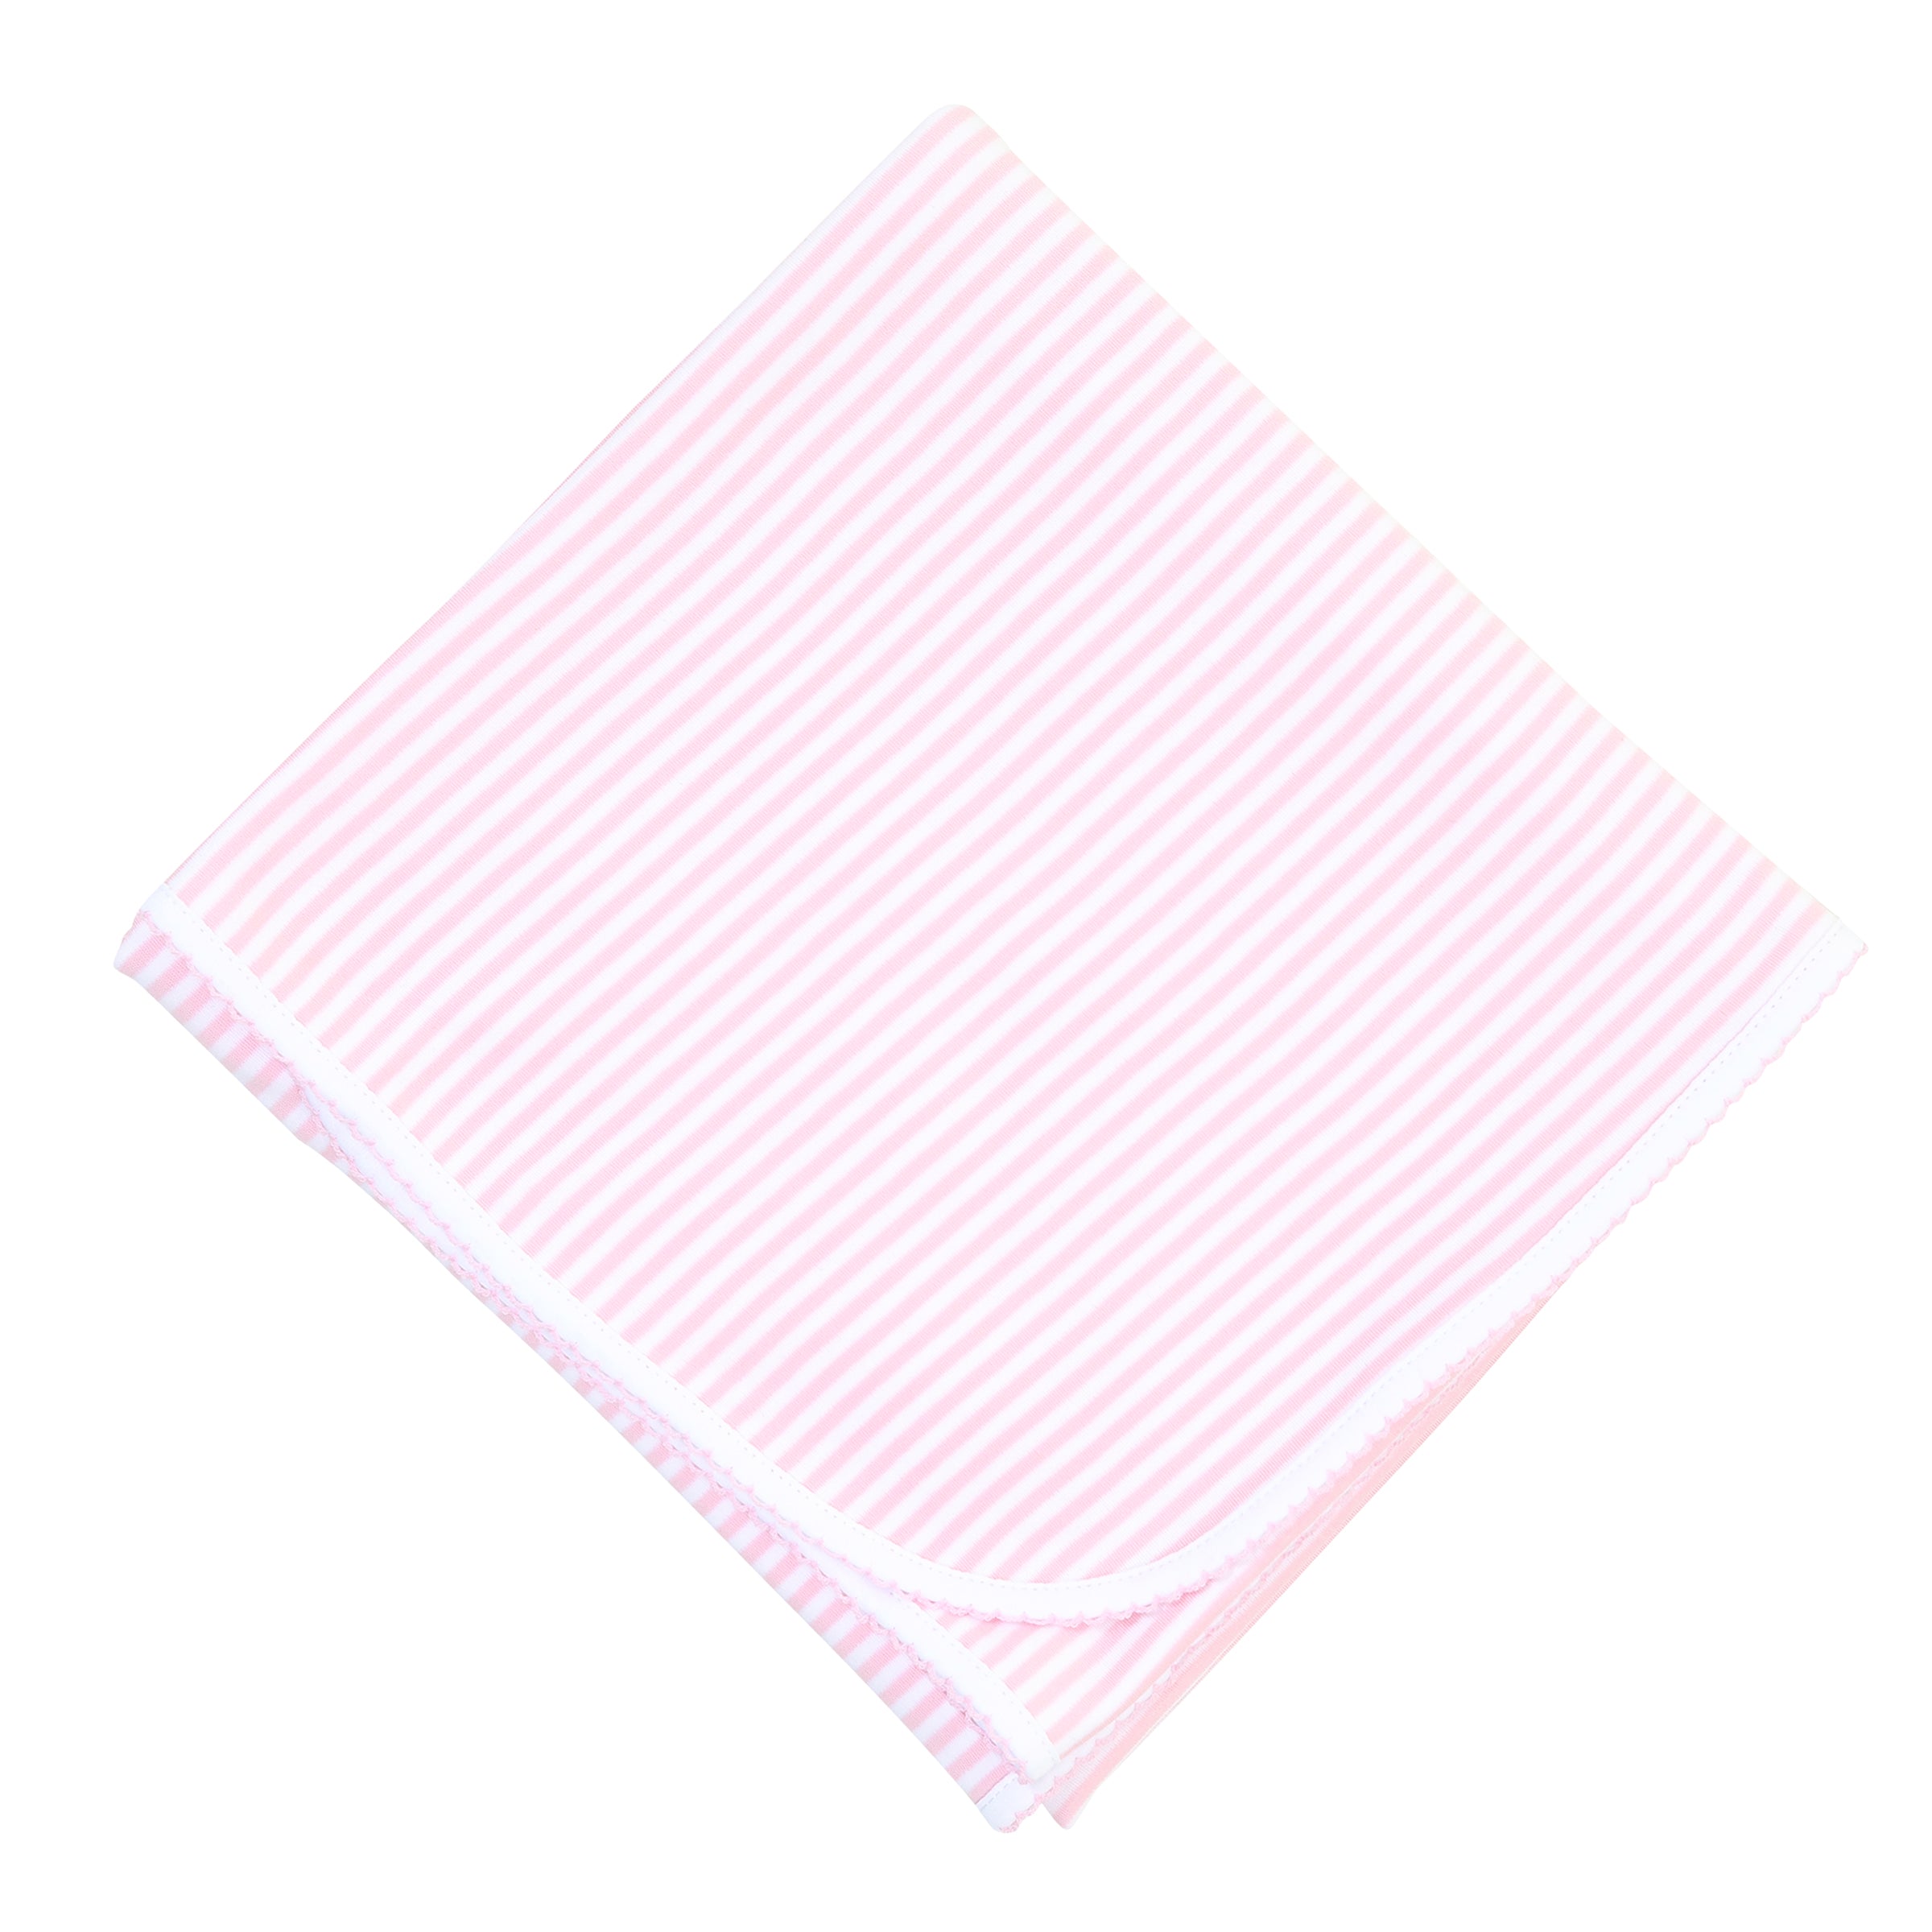 Stripes Receiving Blanket - Pink